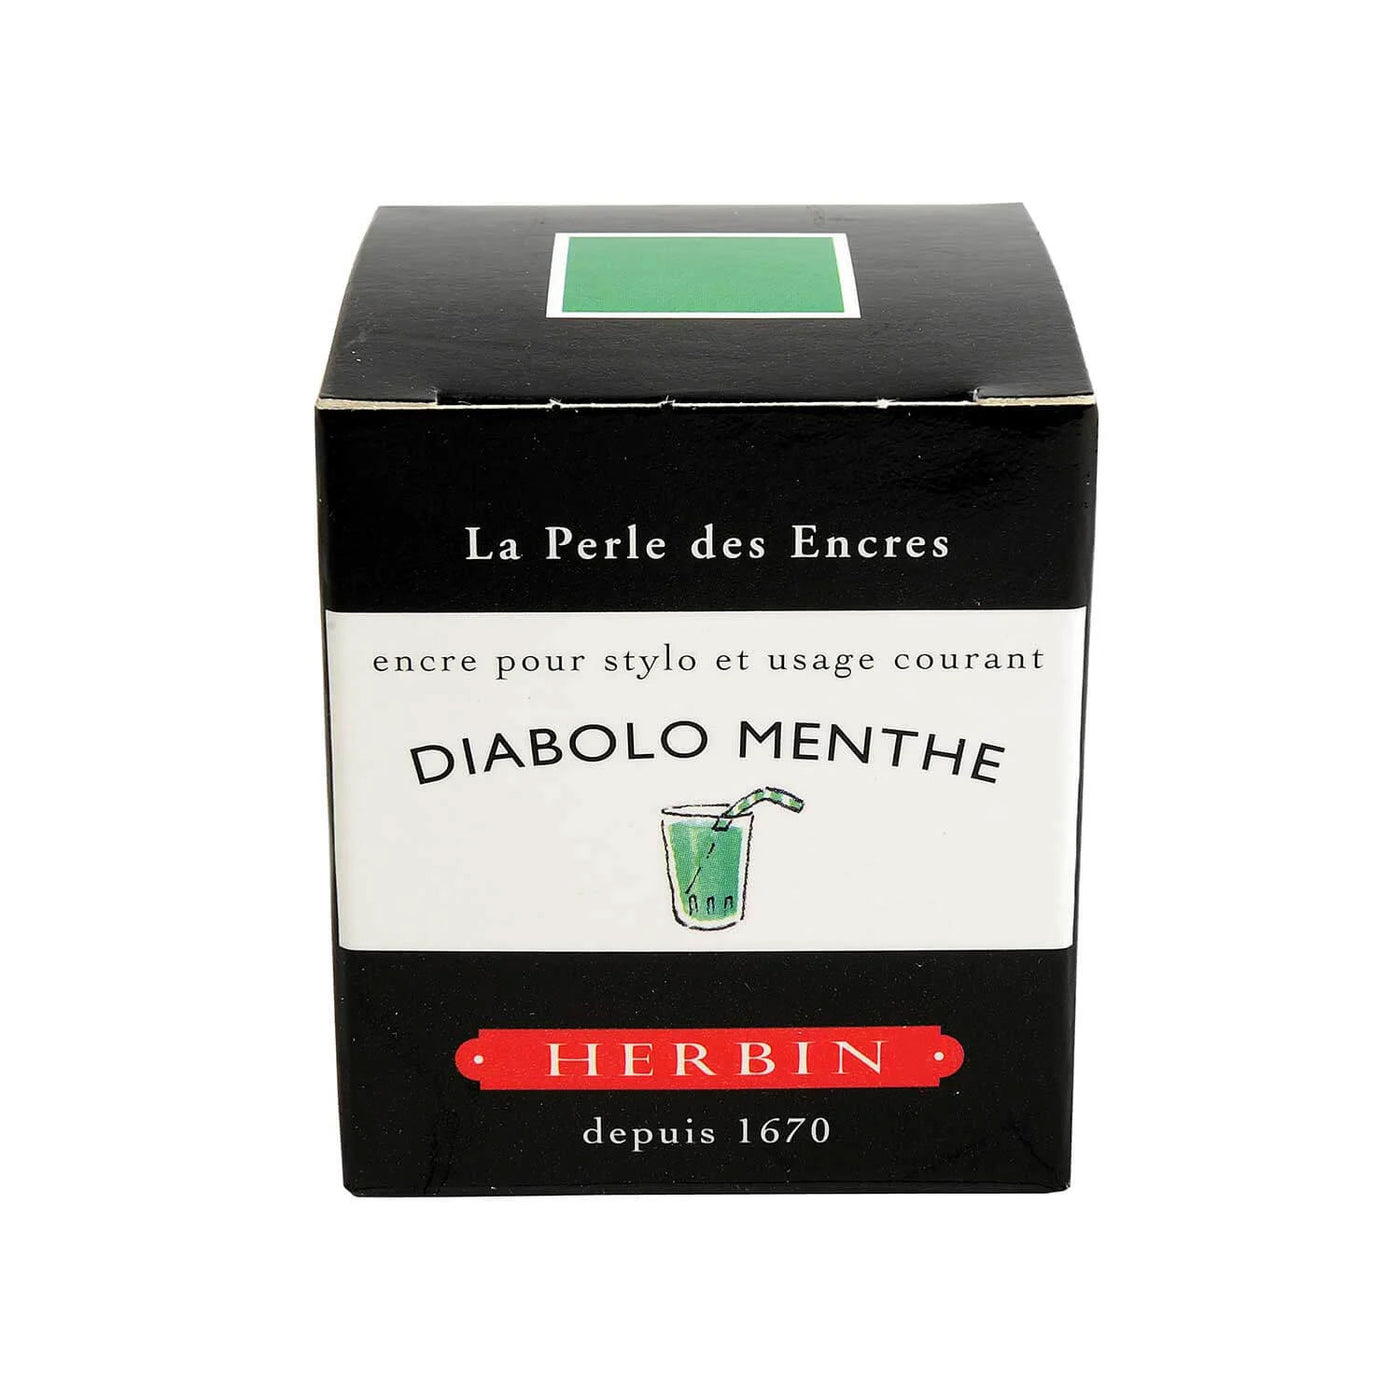 J Herbin "D" Series Ink Bottle Diabolo Menthe (Green Turquoise) - 30ml 2